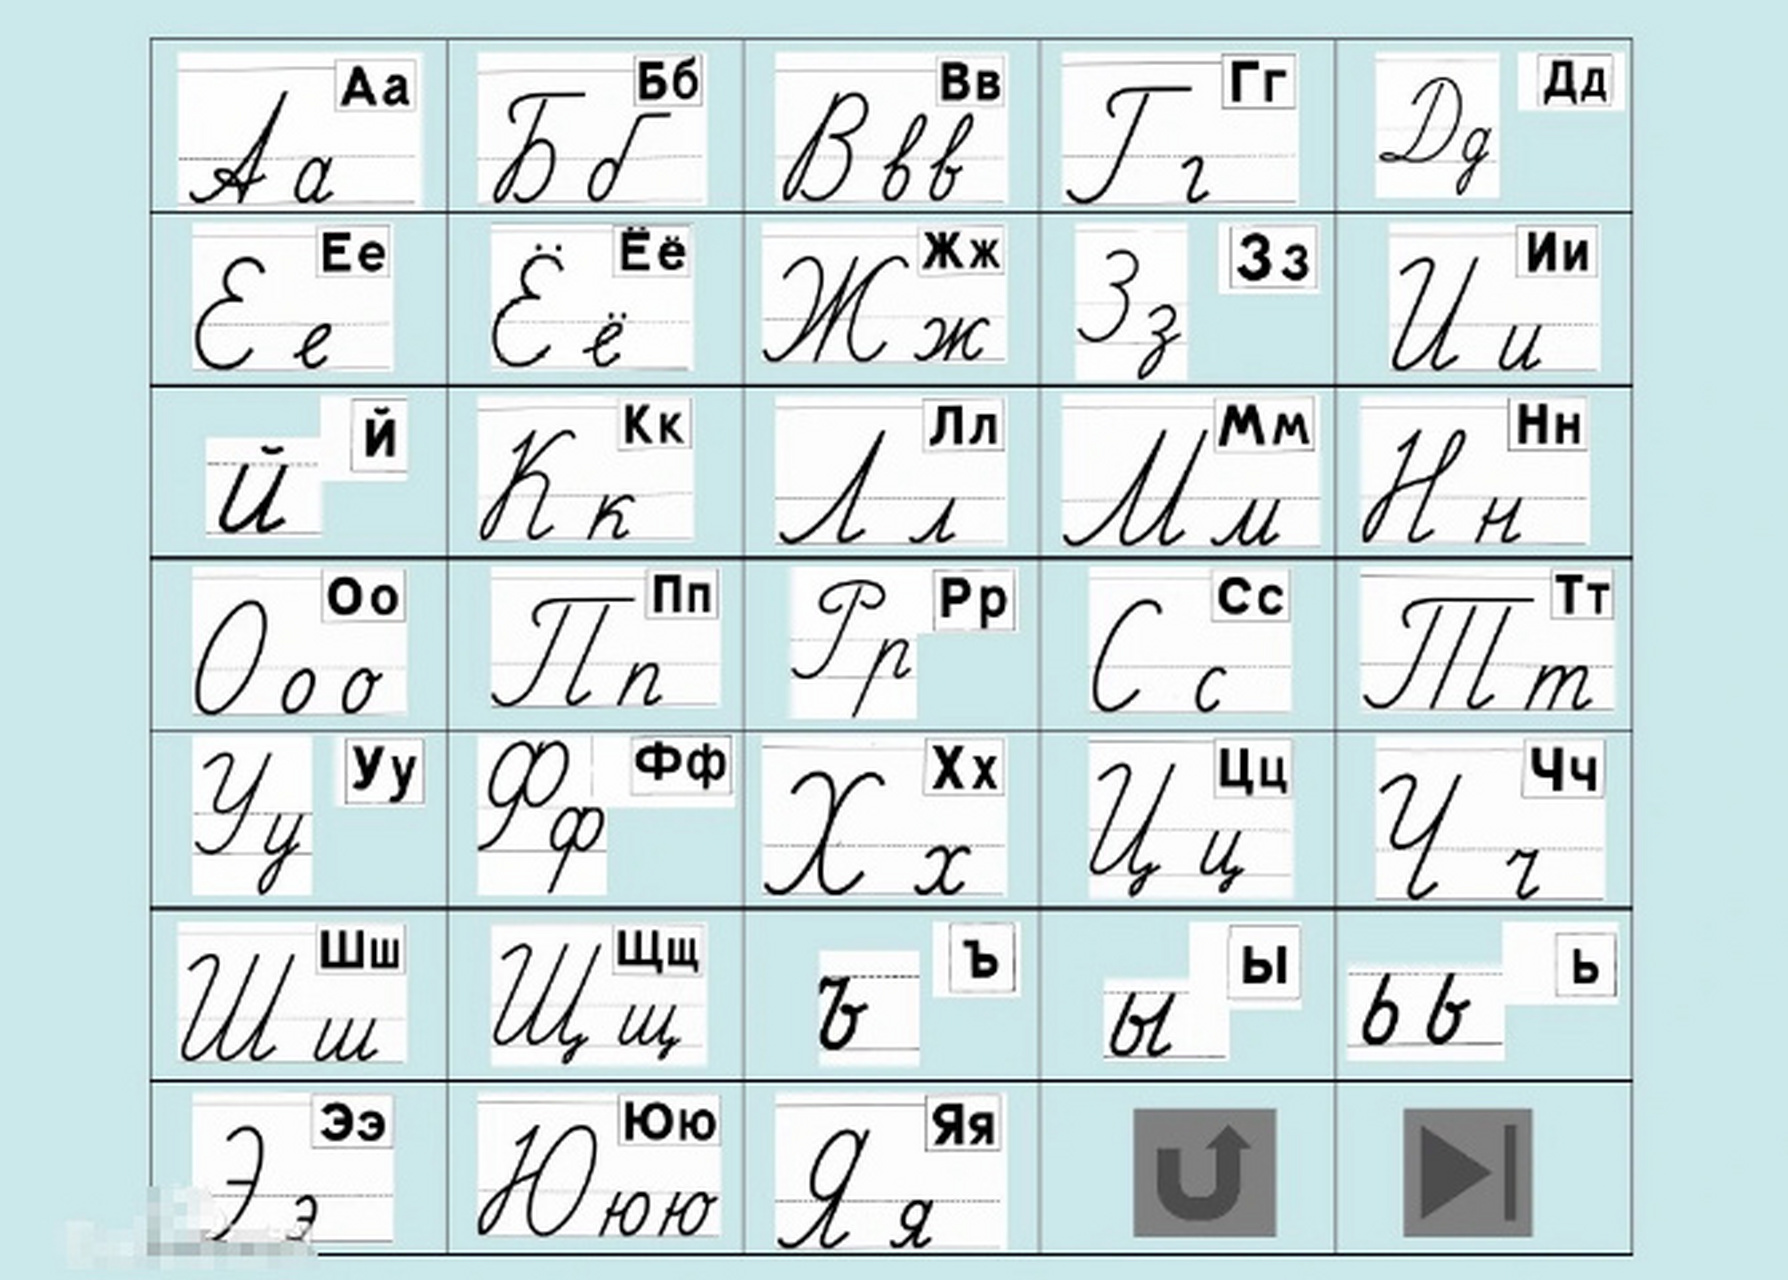 一下俄语字母表,俄语共有33个字母,其中10个元音字母,21个辅音字母,2